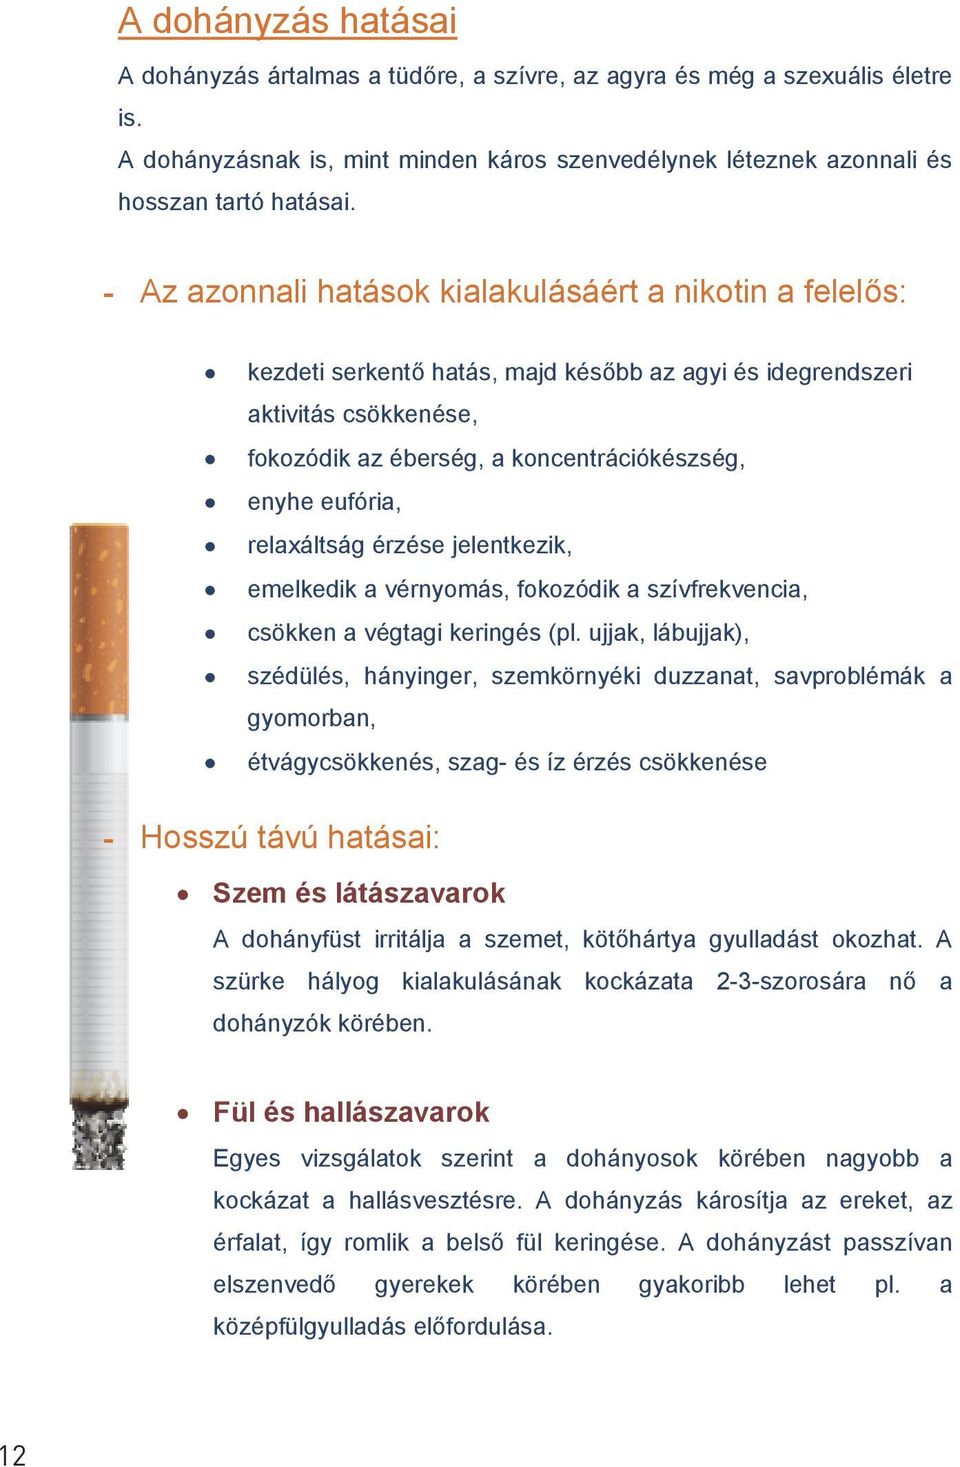 hagyja abba a dohányzás pszichózisát)